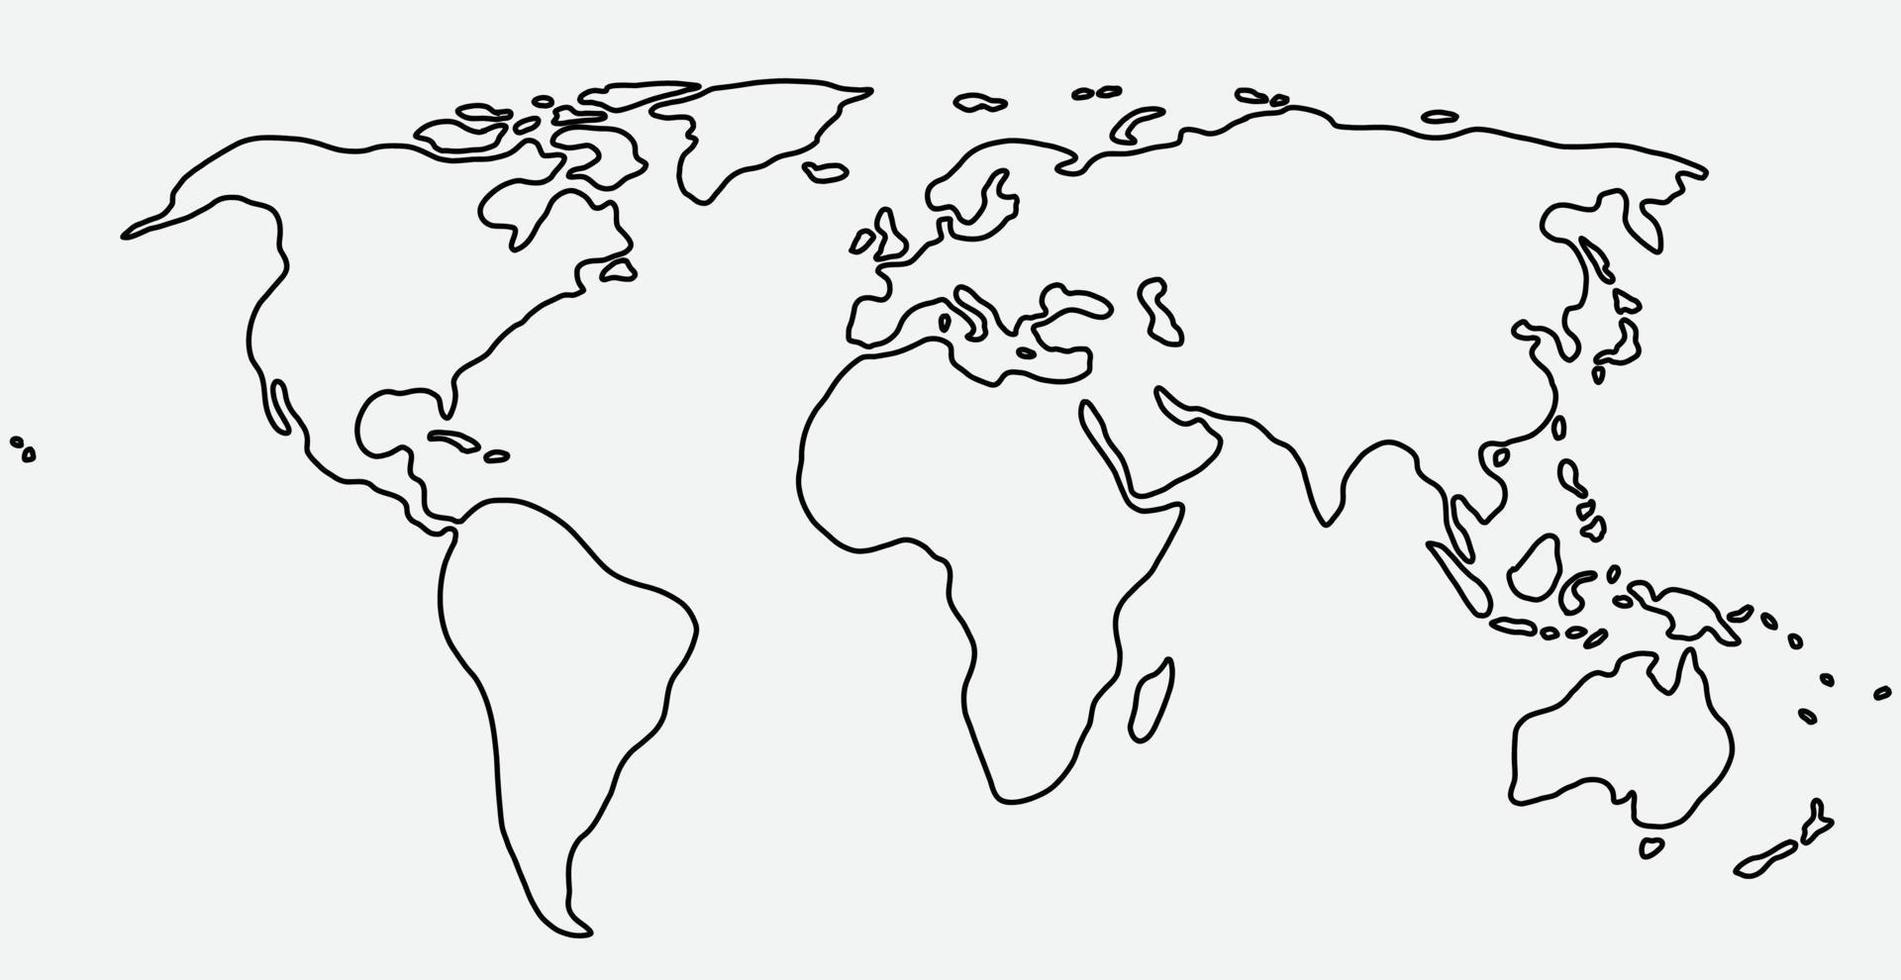 croquis de carte du monde à main levée sur fond blanc. vecteur